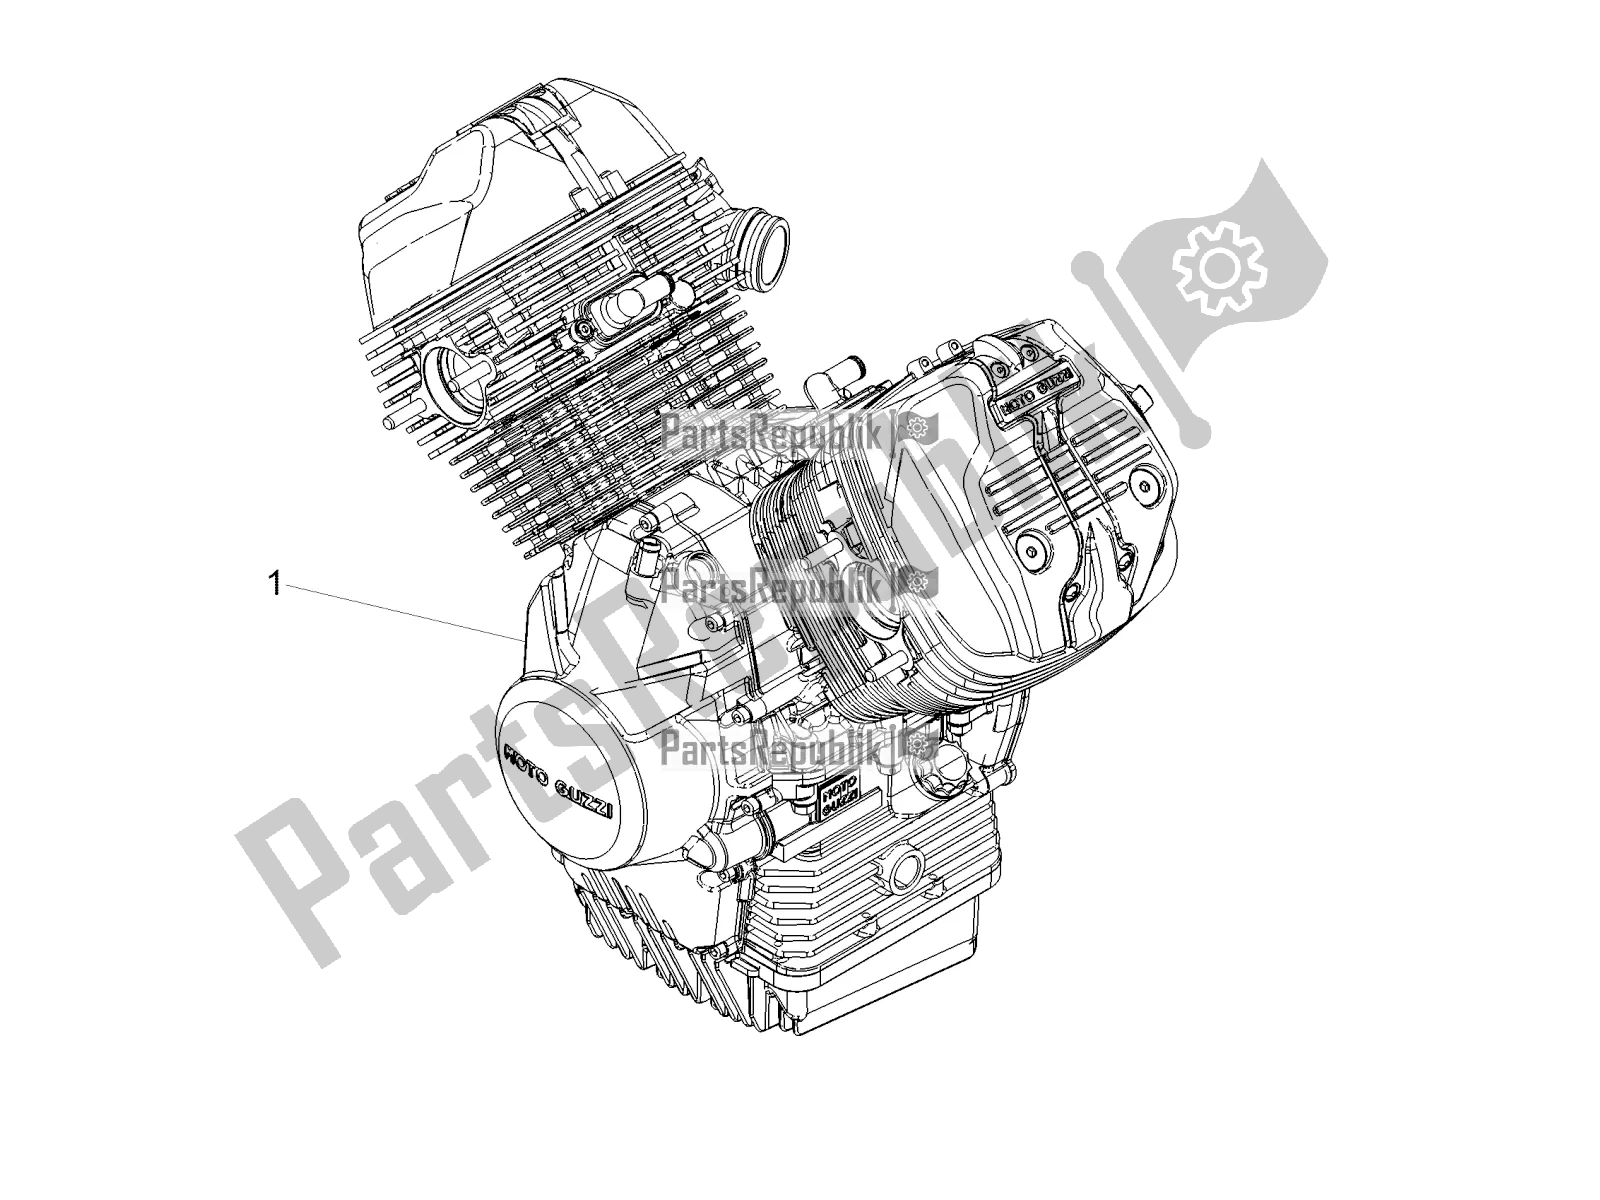 Todas las partes para Palanca Parcial Completa Del Motor de Moto-Guzzi V7 III Anniversario 750 ABS USA 2017